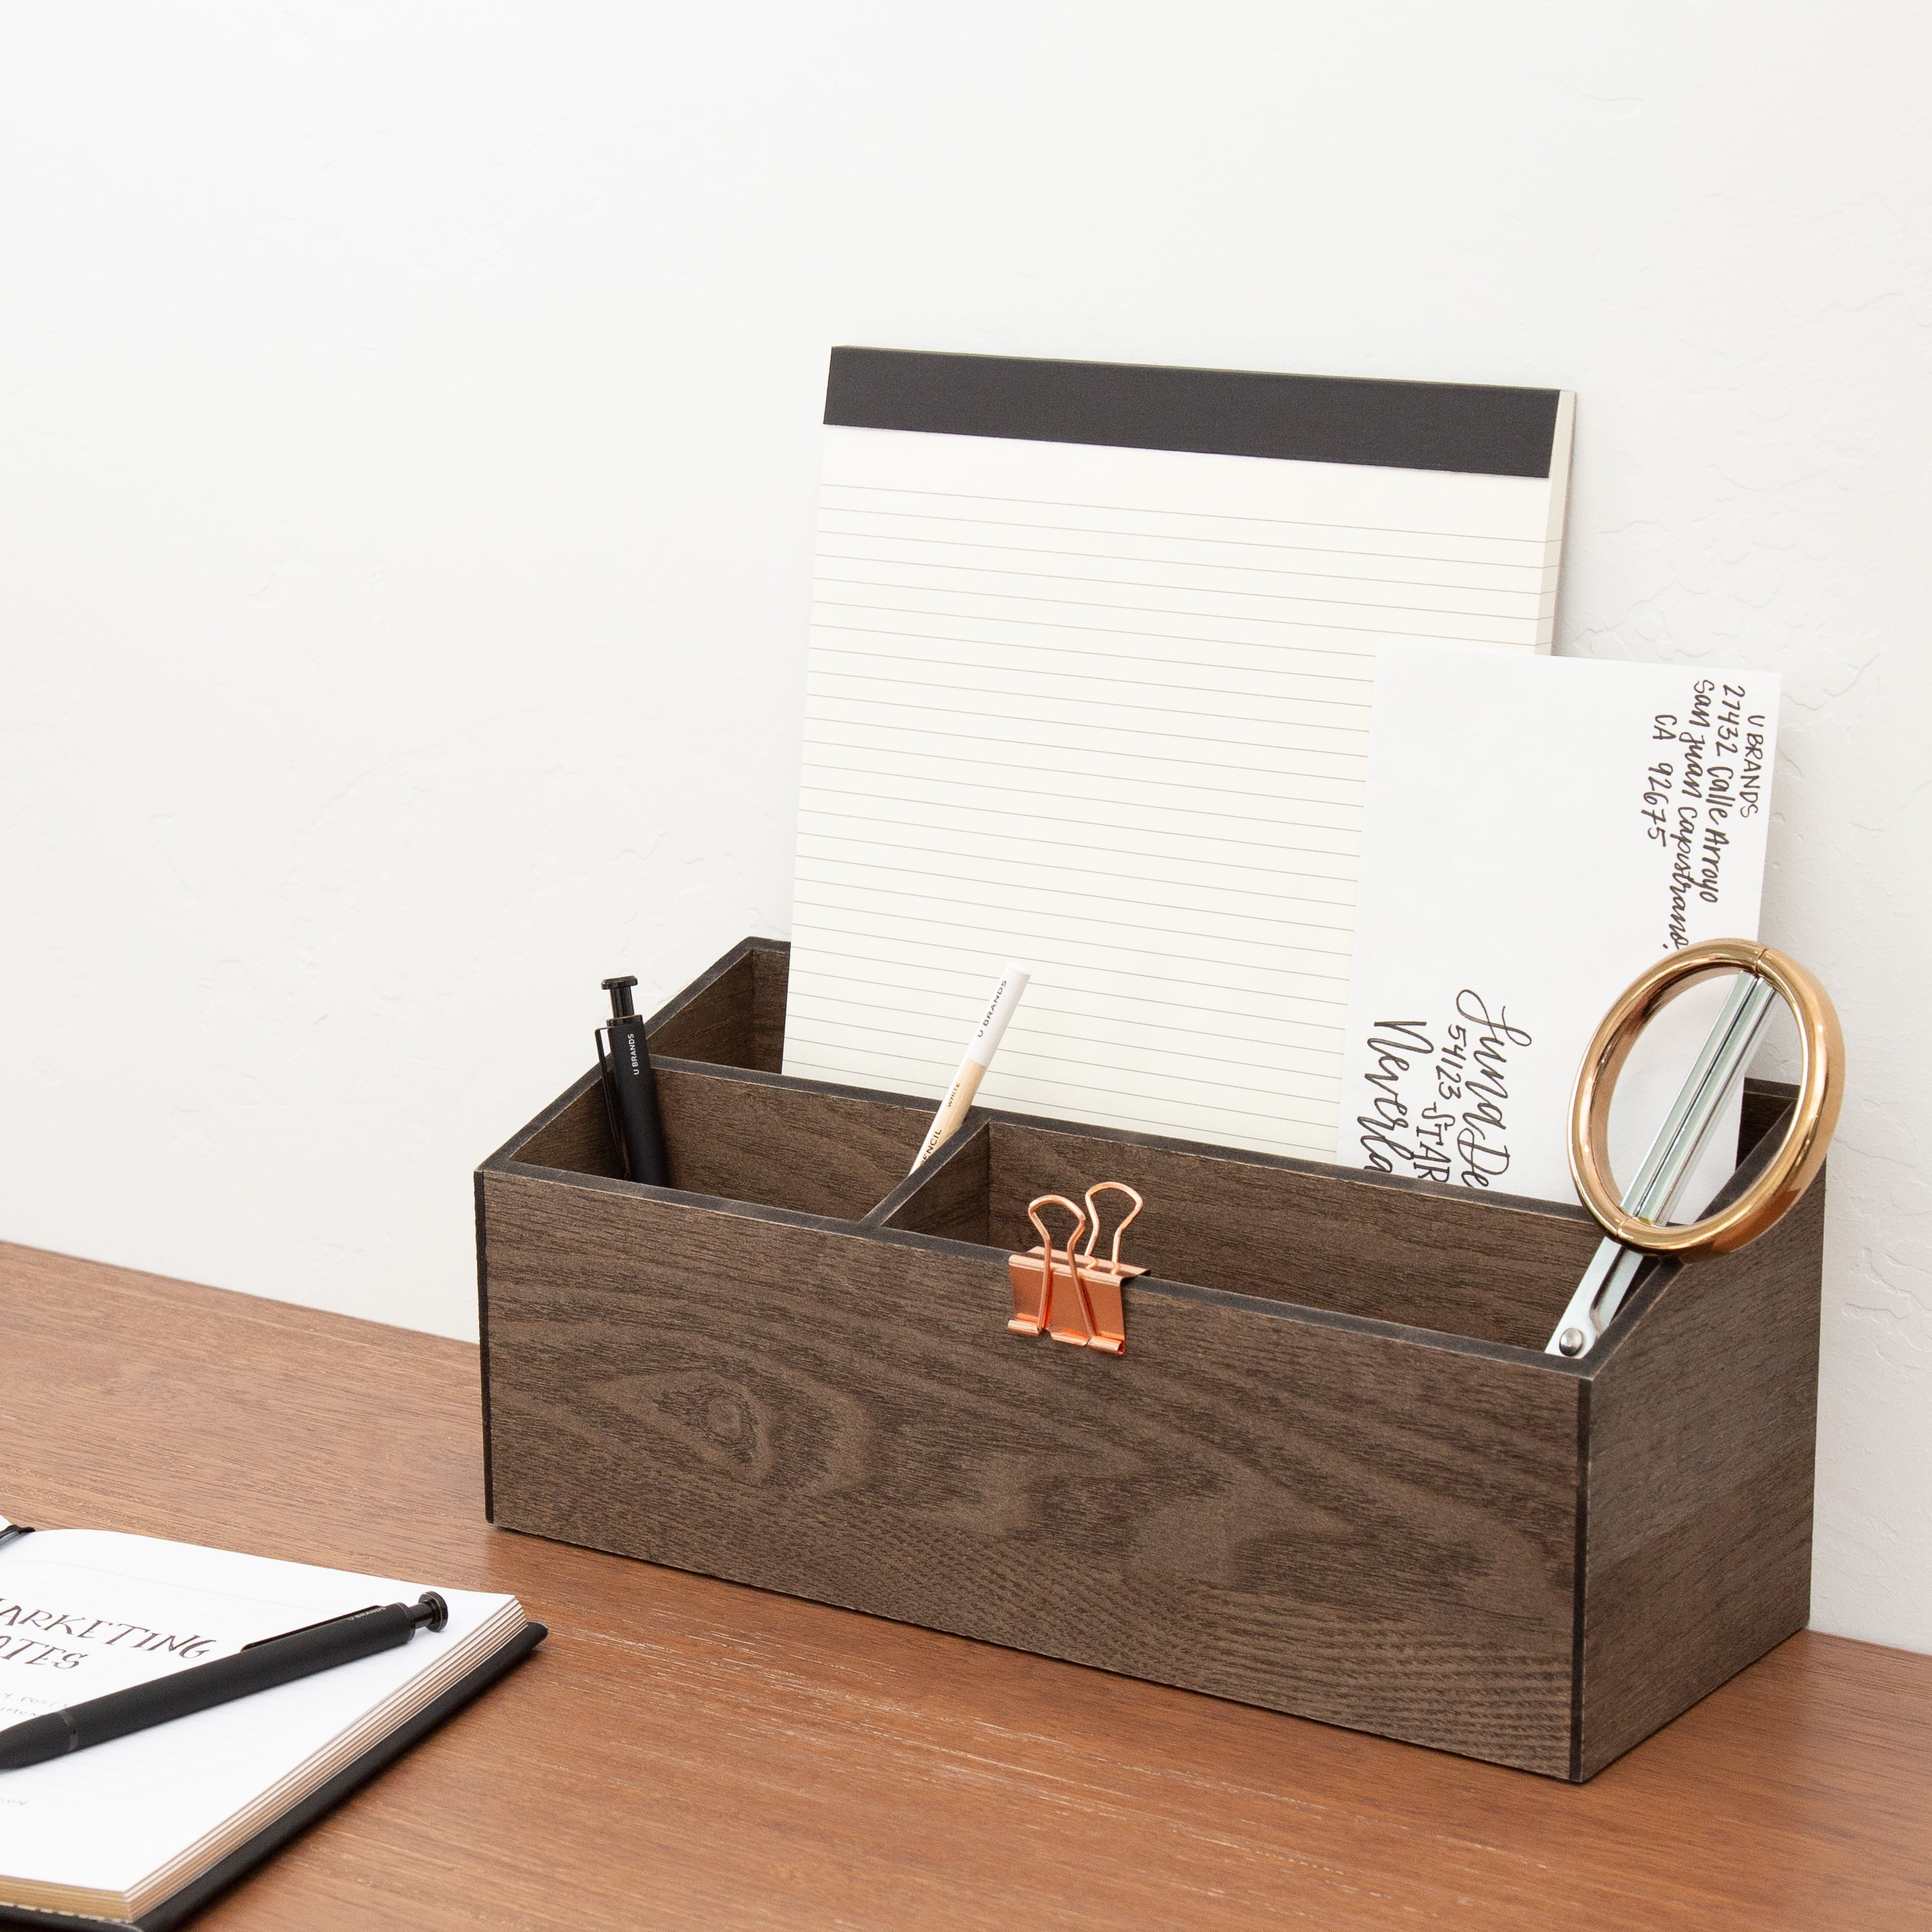 U Brands 3 Compartments Wooden Desk Storage Bin - Dark Brown - 1 Each